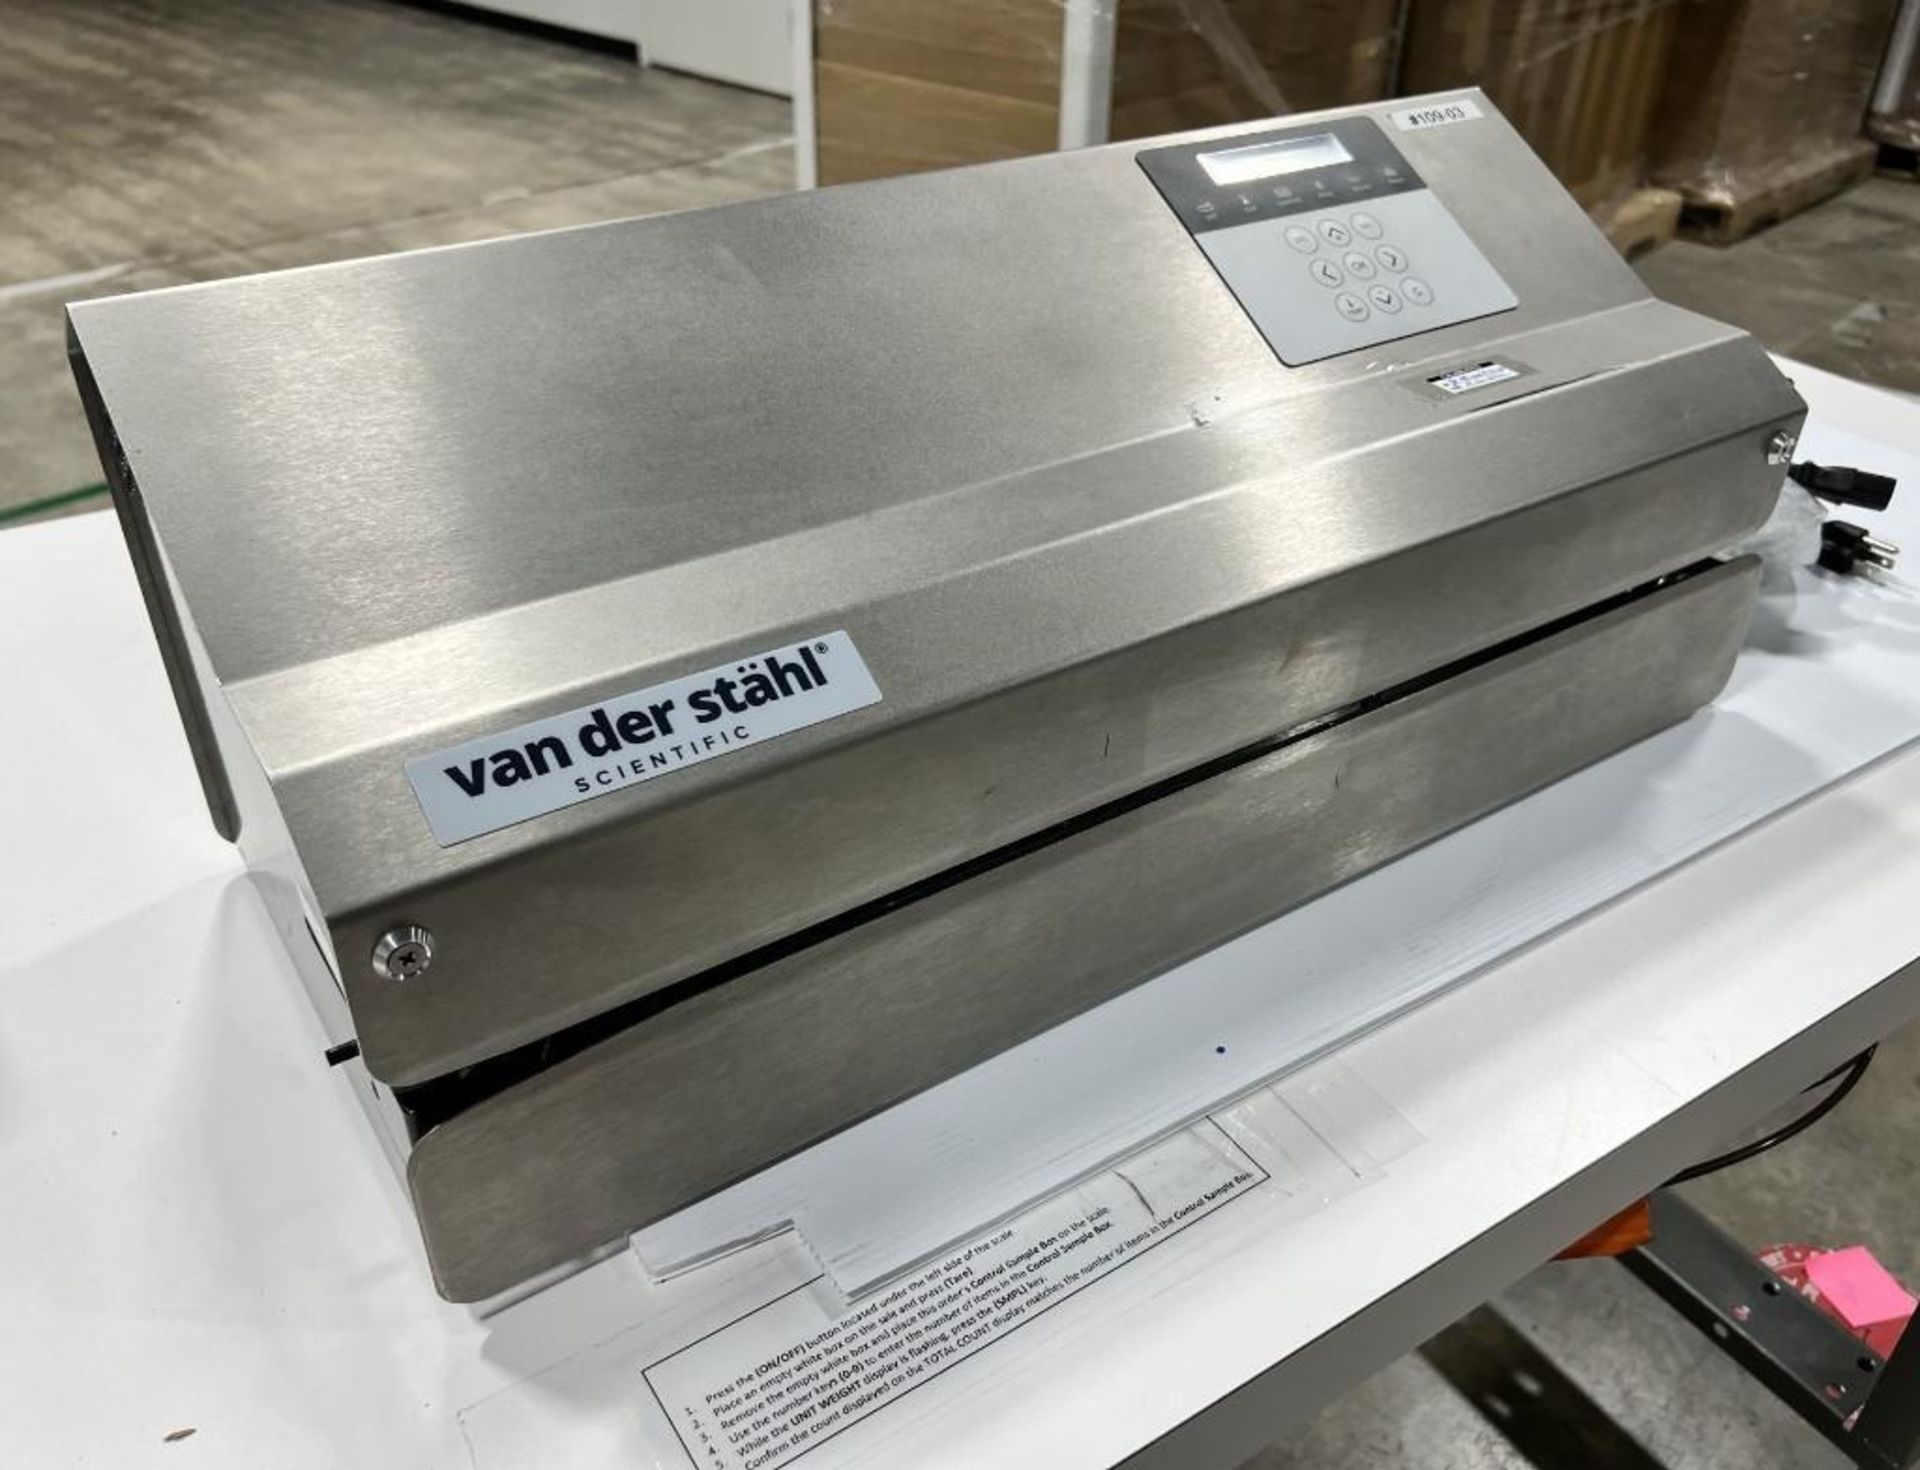 Van Der Stahl MD Series Pouch Sealer, Model MD-880, Serial# 514494, Built 03-2019.